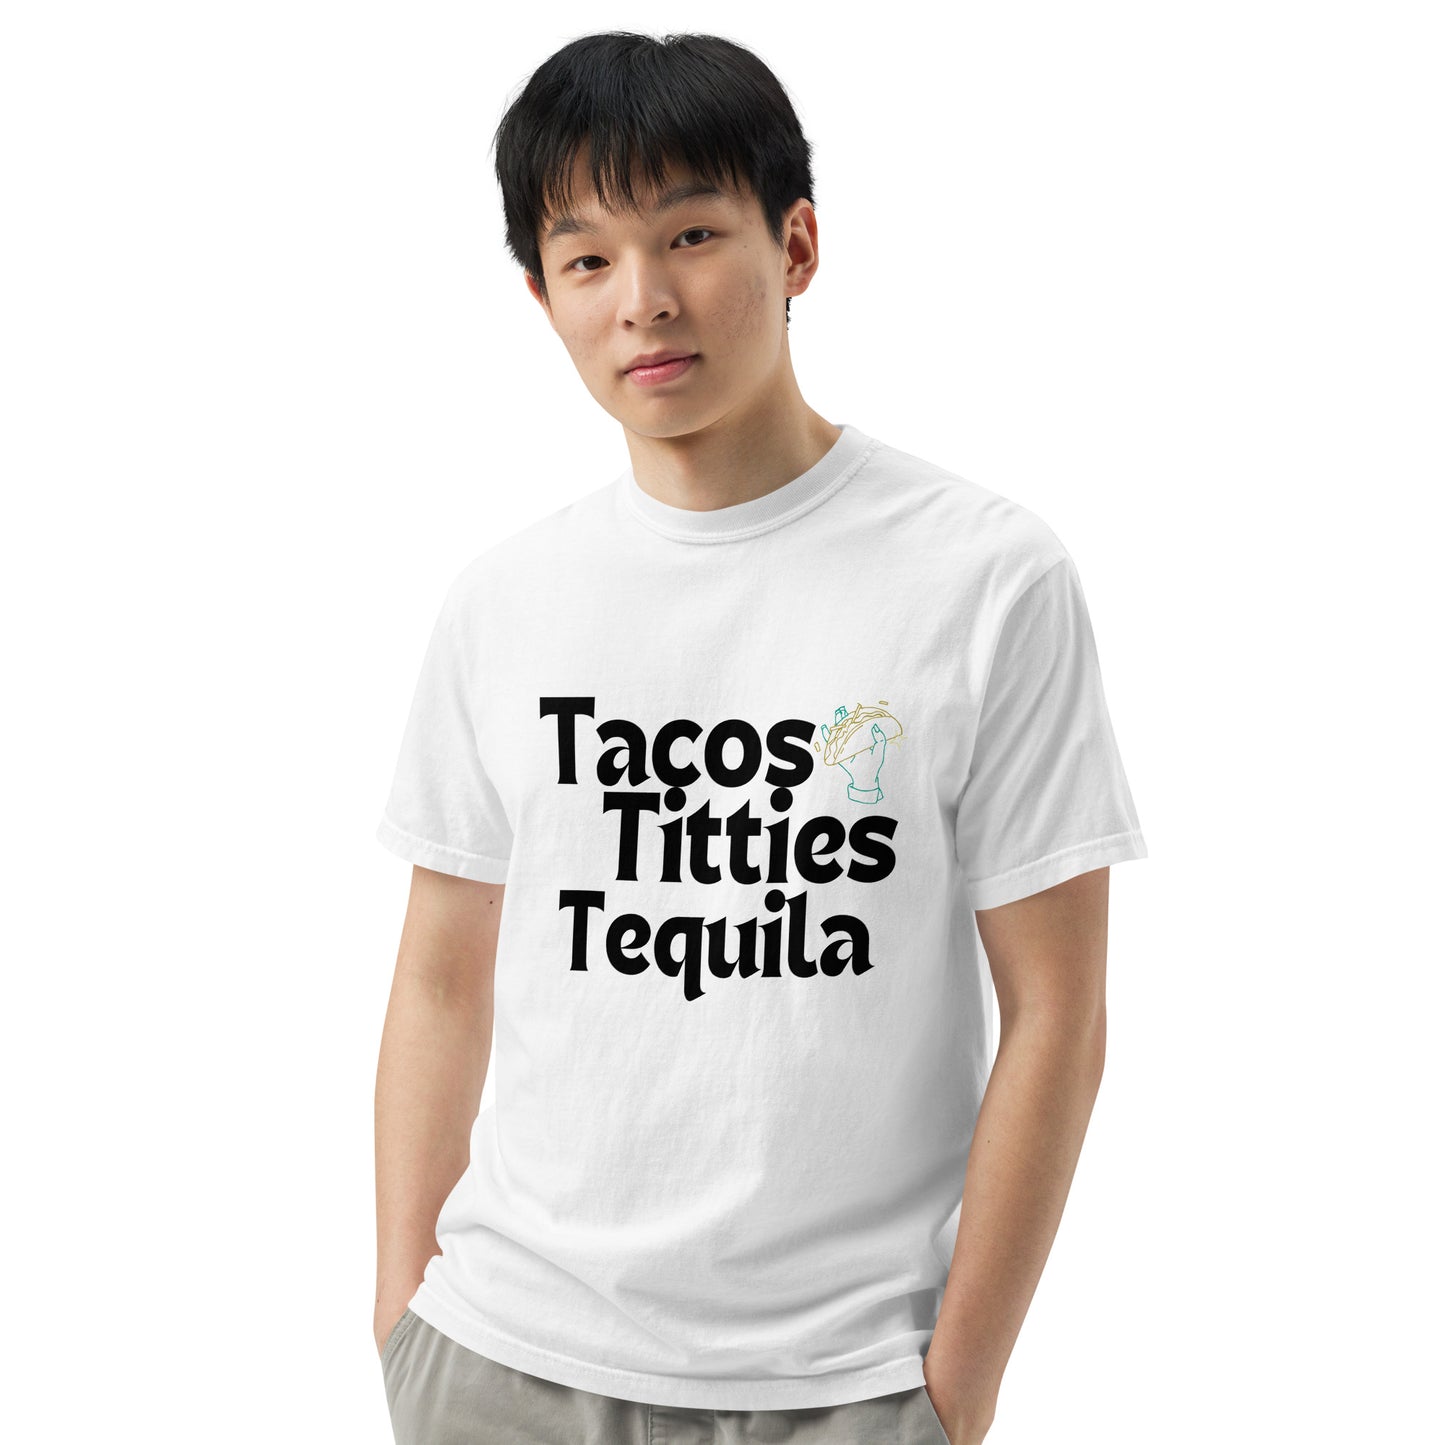 Tacos Titties & Tequila Tee